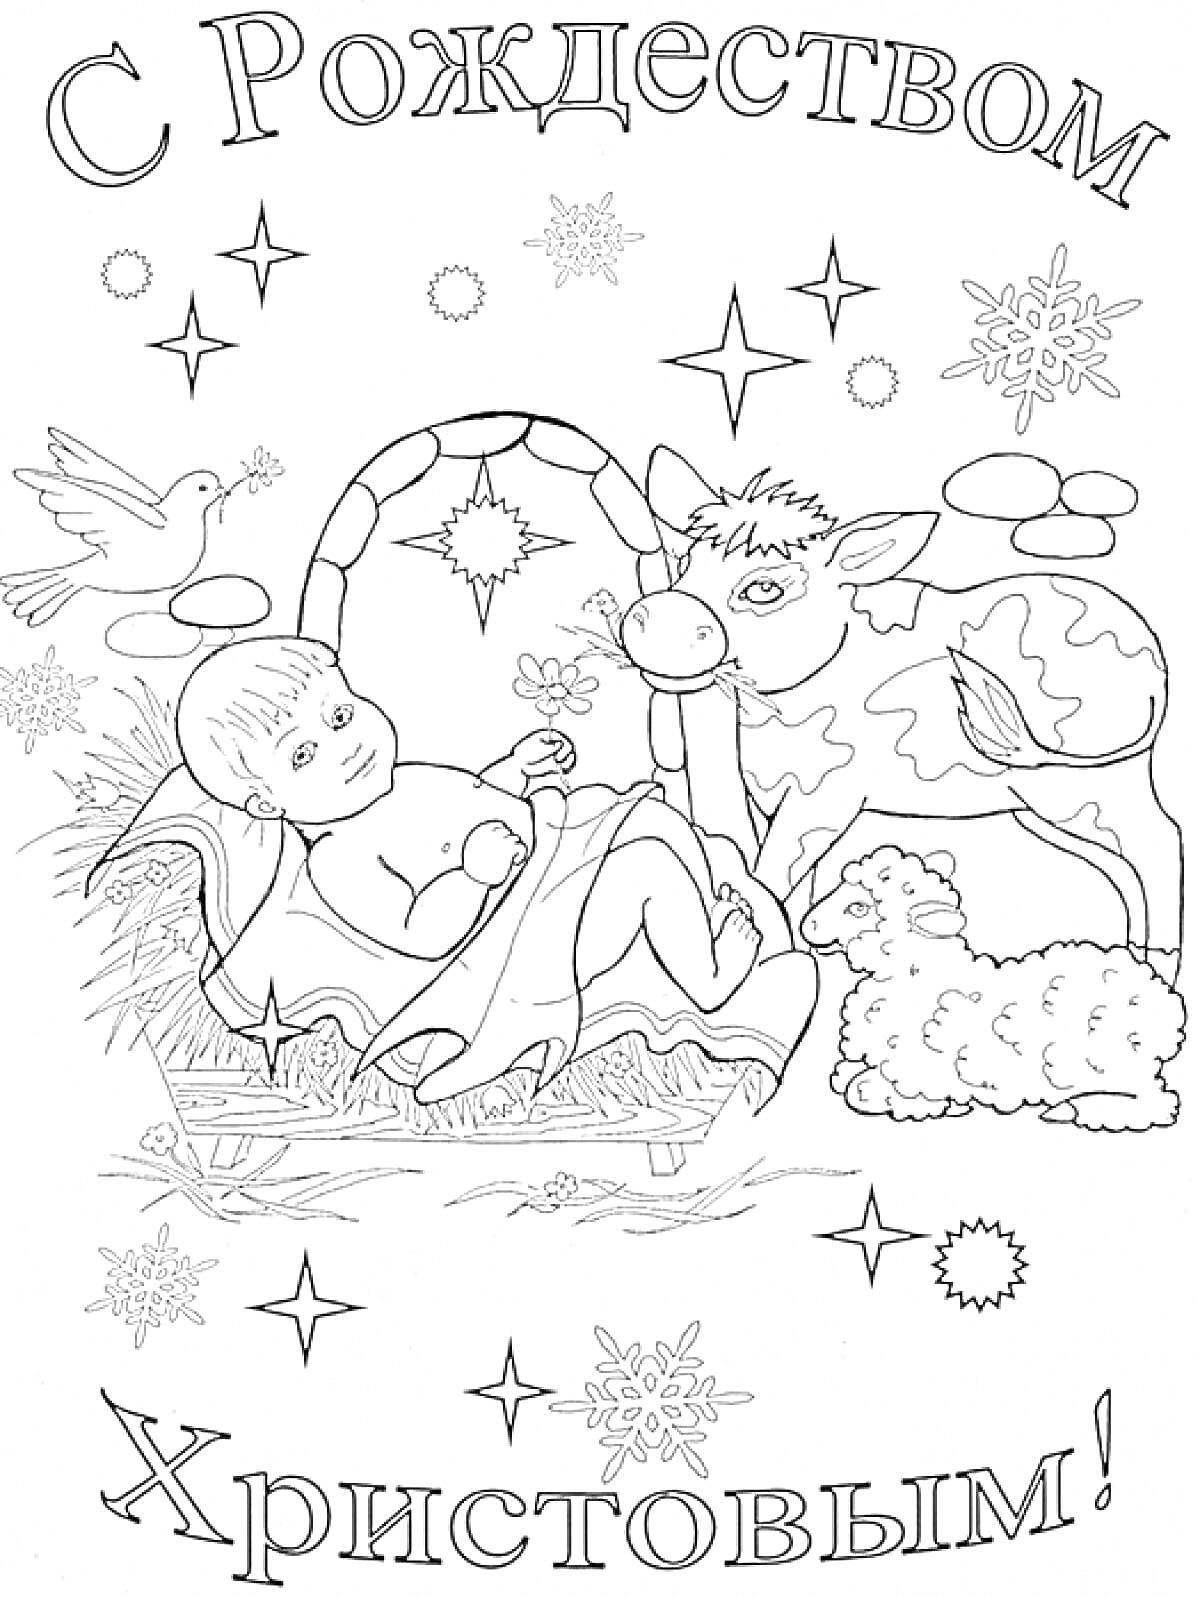 Раскраска Рождественская сцена с младенцем Иисусом в яслях, ослом, овцой, звездочками, снежинками и голубем